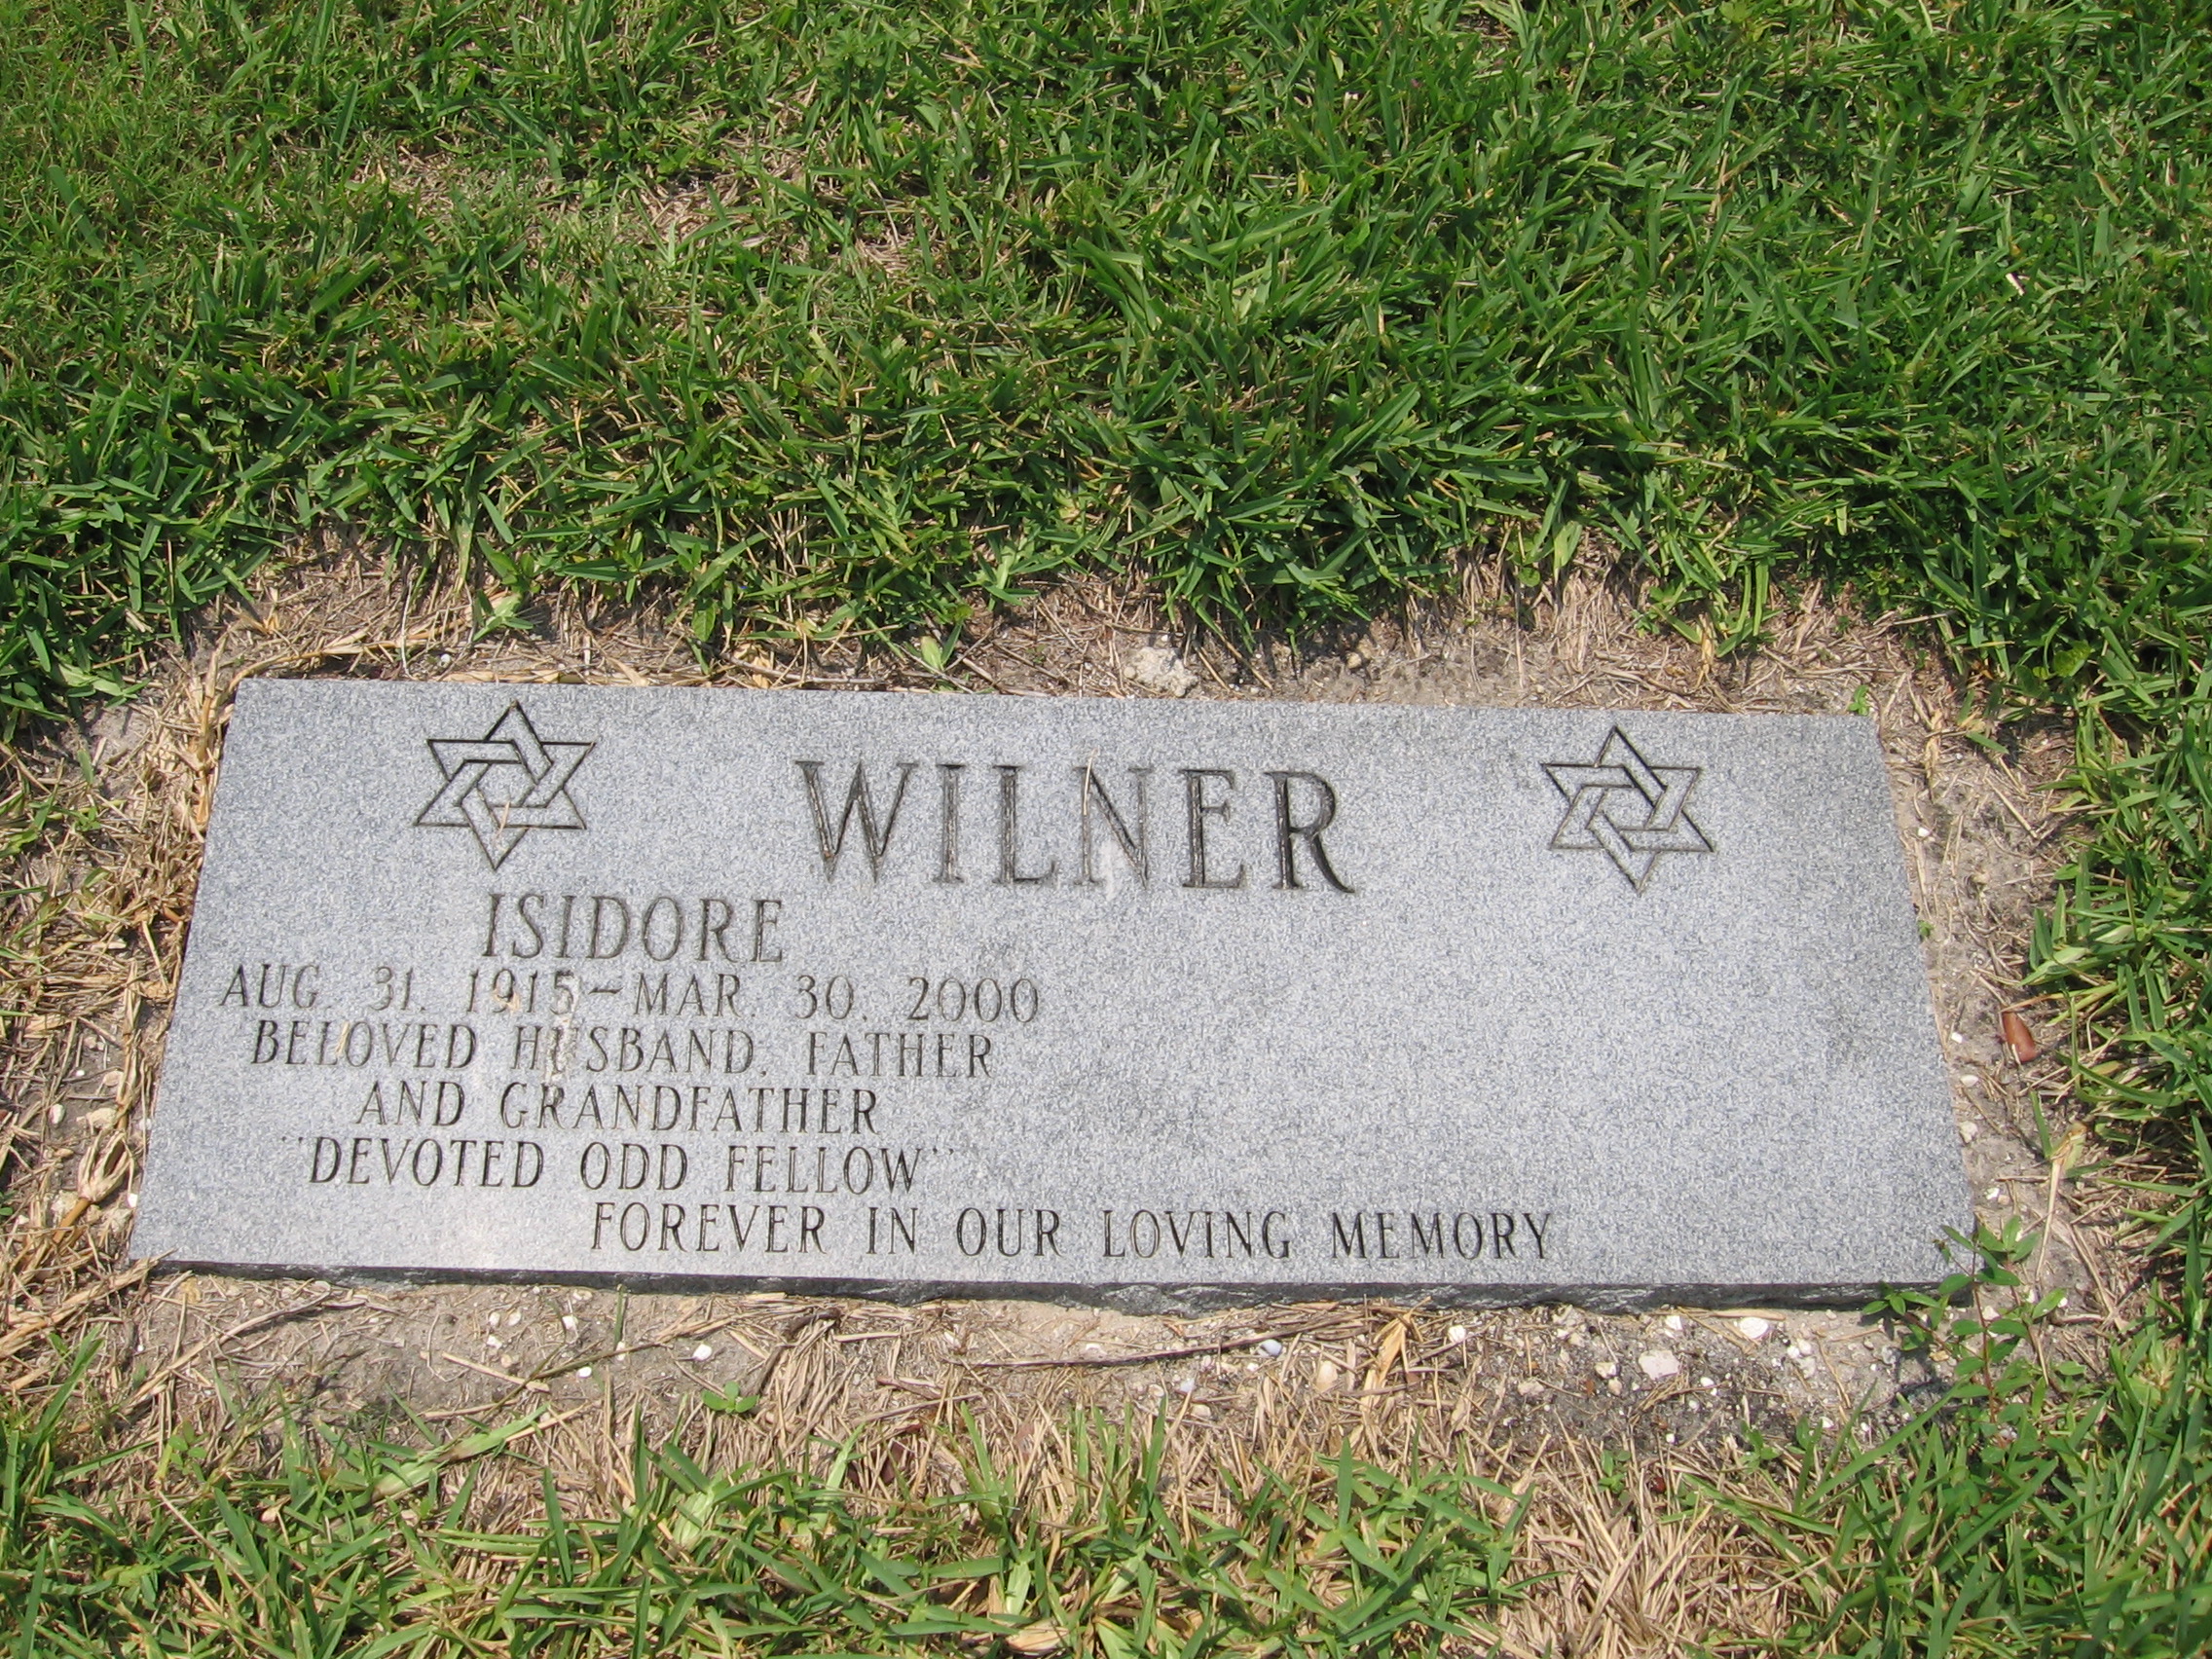 Isidore Wilner